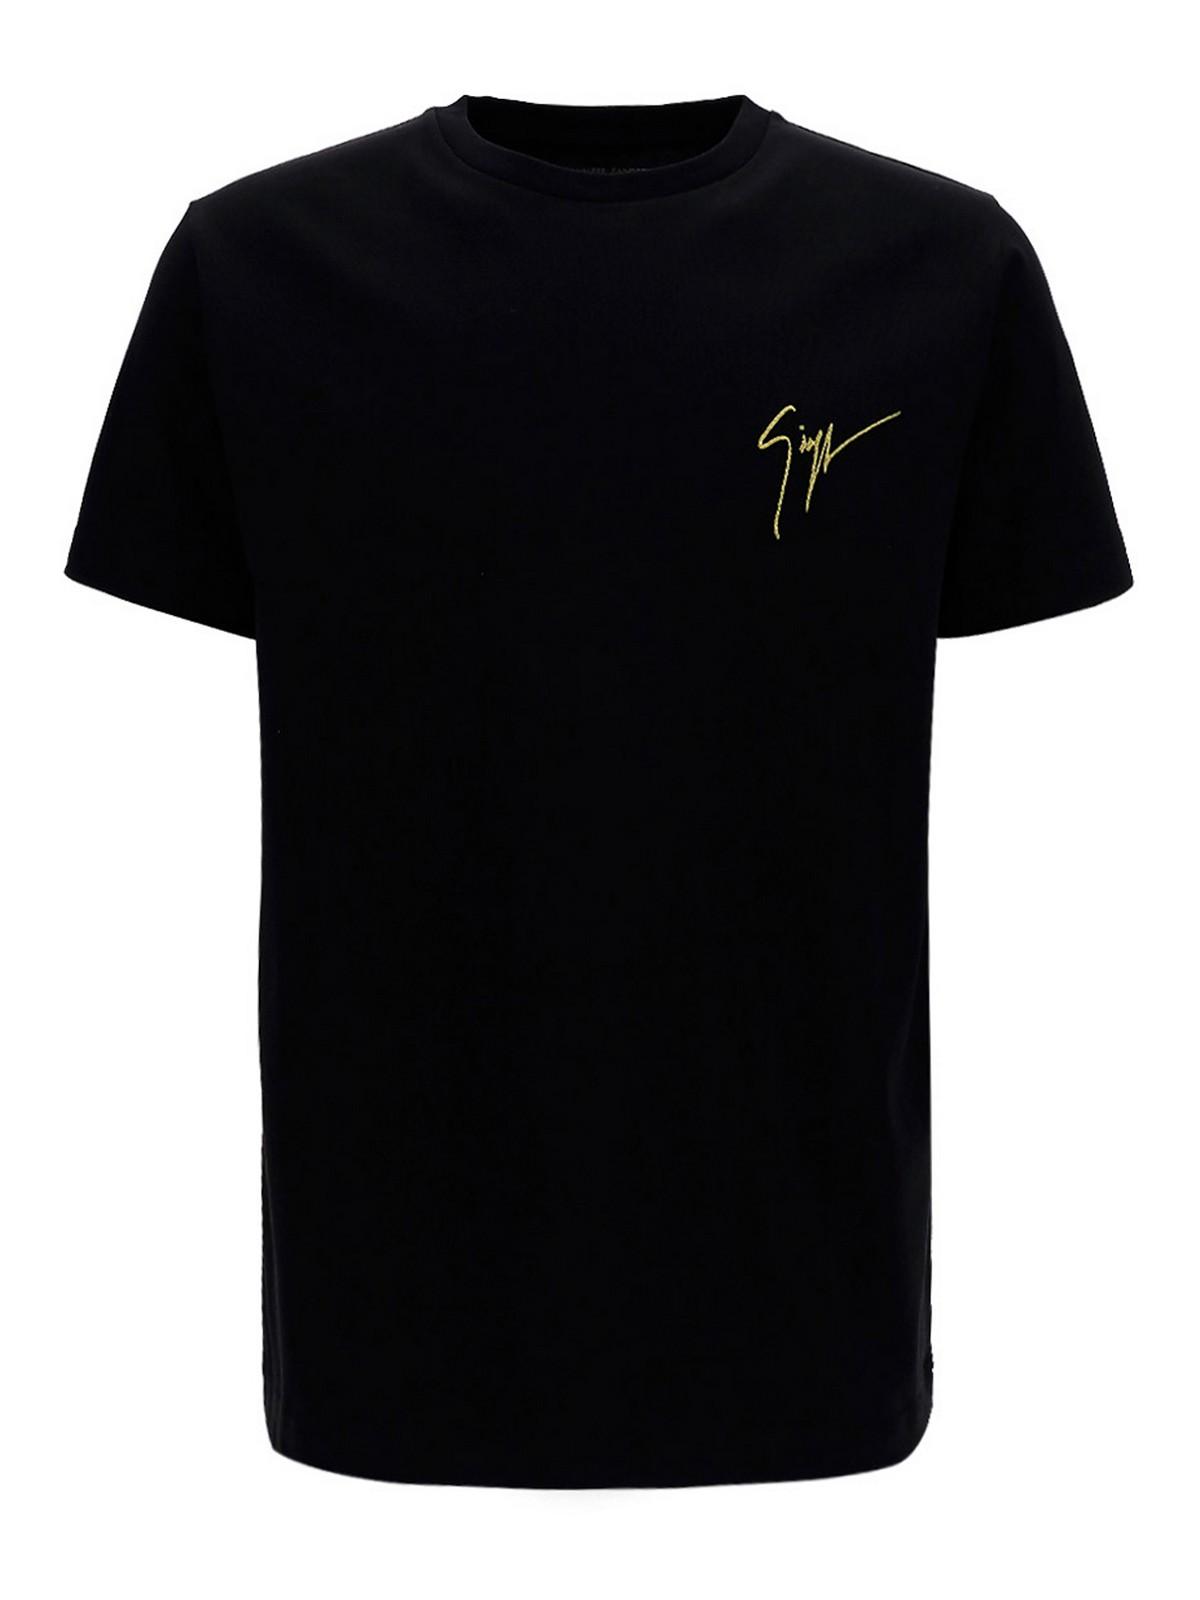 Giuseppe Zanotti Logo Embroidery T-shirt in Black for Men - Lyst